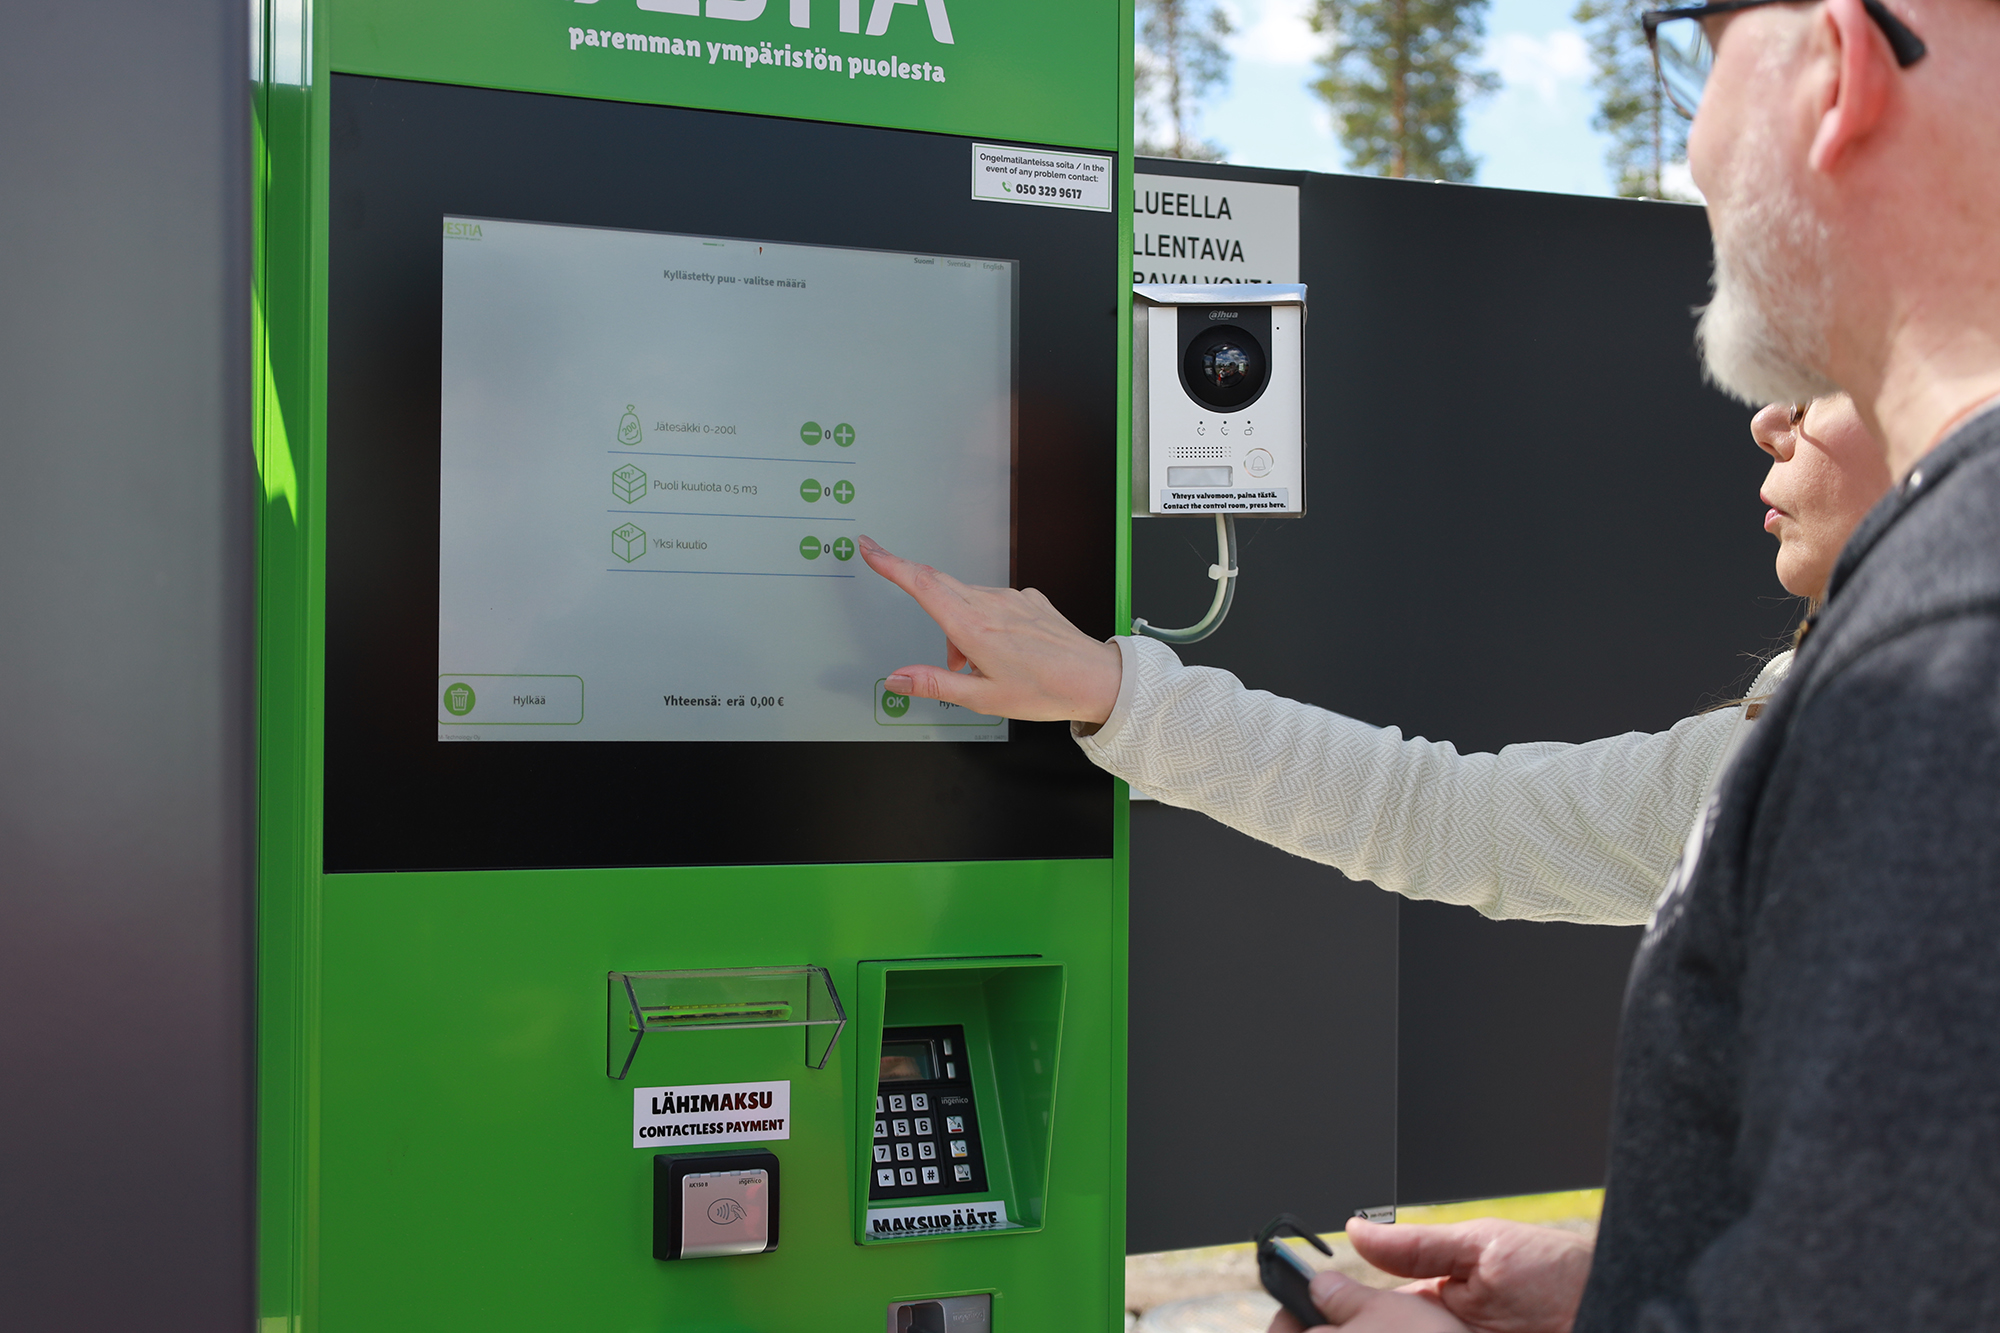 Palveluautomaatilla asiakas ilmoittaa kaikki tuomansa jätelajit (myös maksuttomat) ja automaatti laskee jätekuorman hinnan. Maksutapana käy pankki- tai luottokortti.